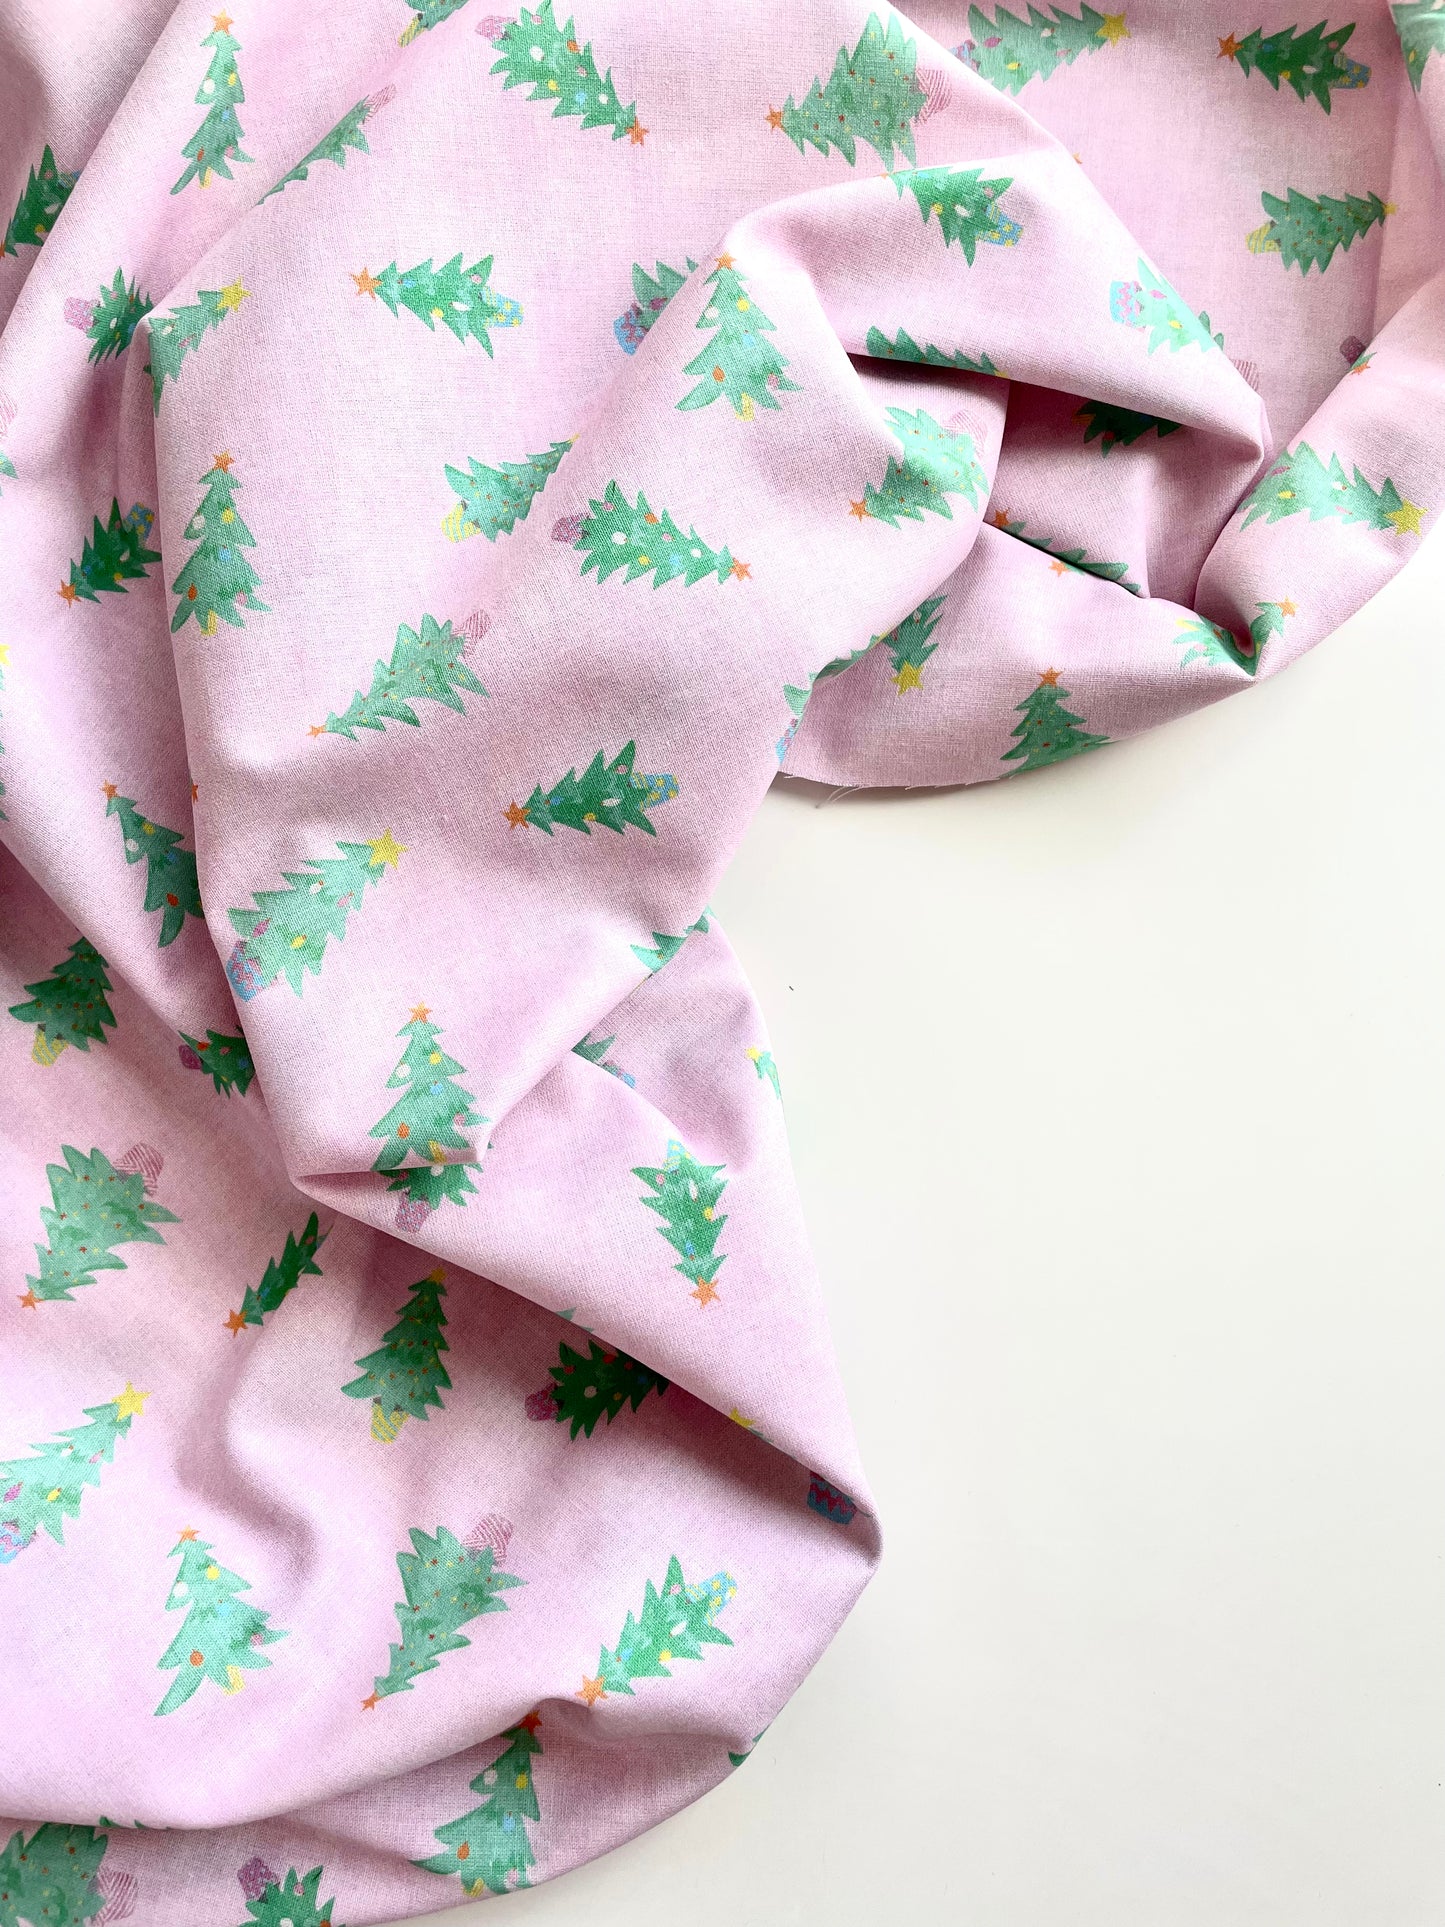 Pomegranate Pyjamas Kit - Cute Christmas Trees Cotton